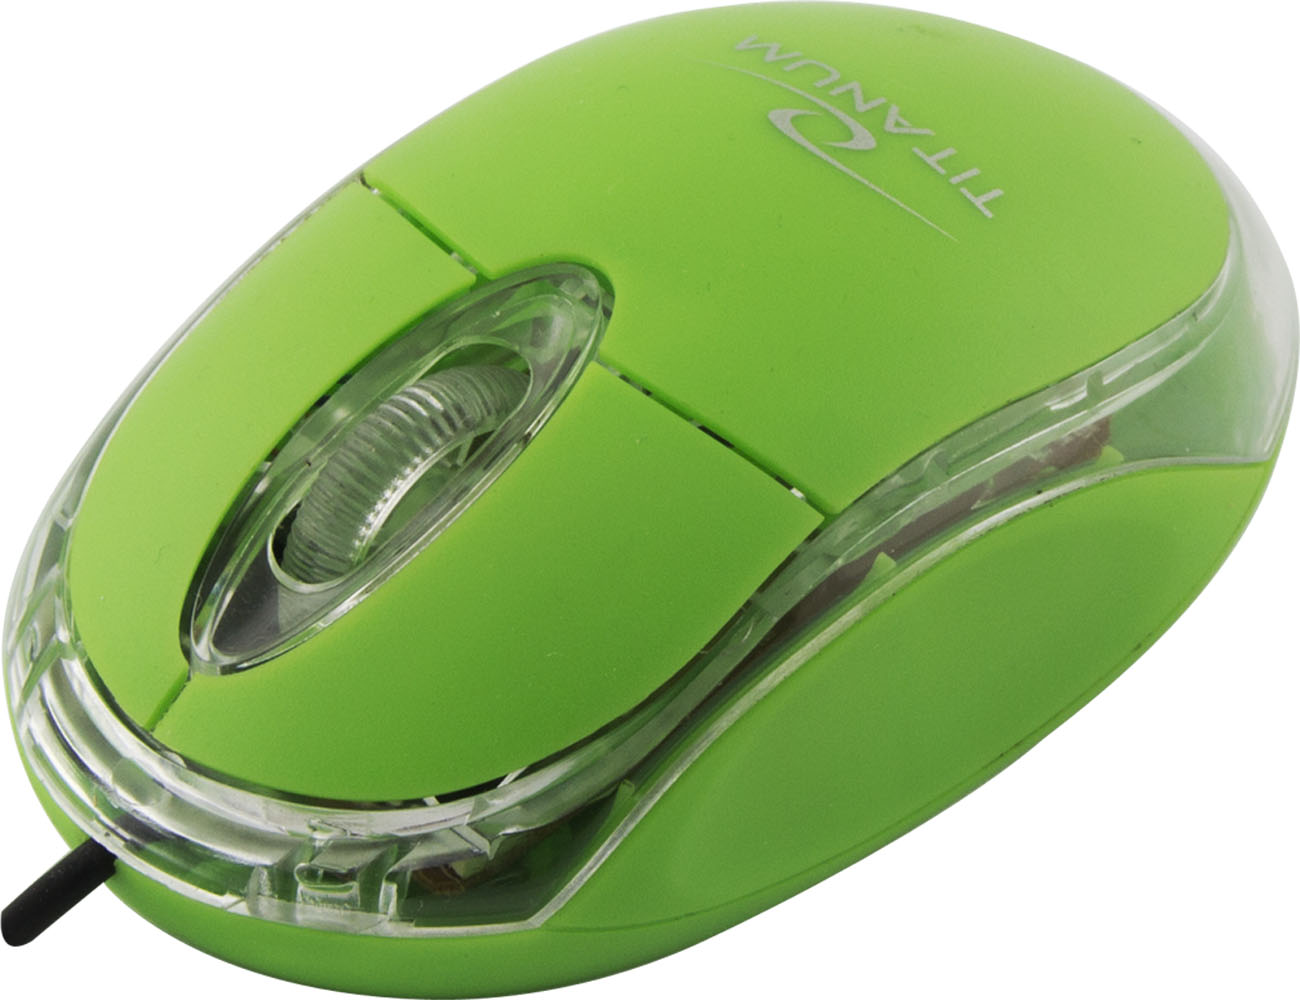 Мыши д. Мышка 3d Optical Mouse. Мышь Canyon CNR-msl8g Green USB+PS/2. Мышь Media-Tech mt1104g Green USB. Мышка с зеленой подсветкой.